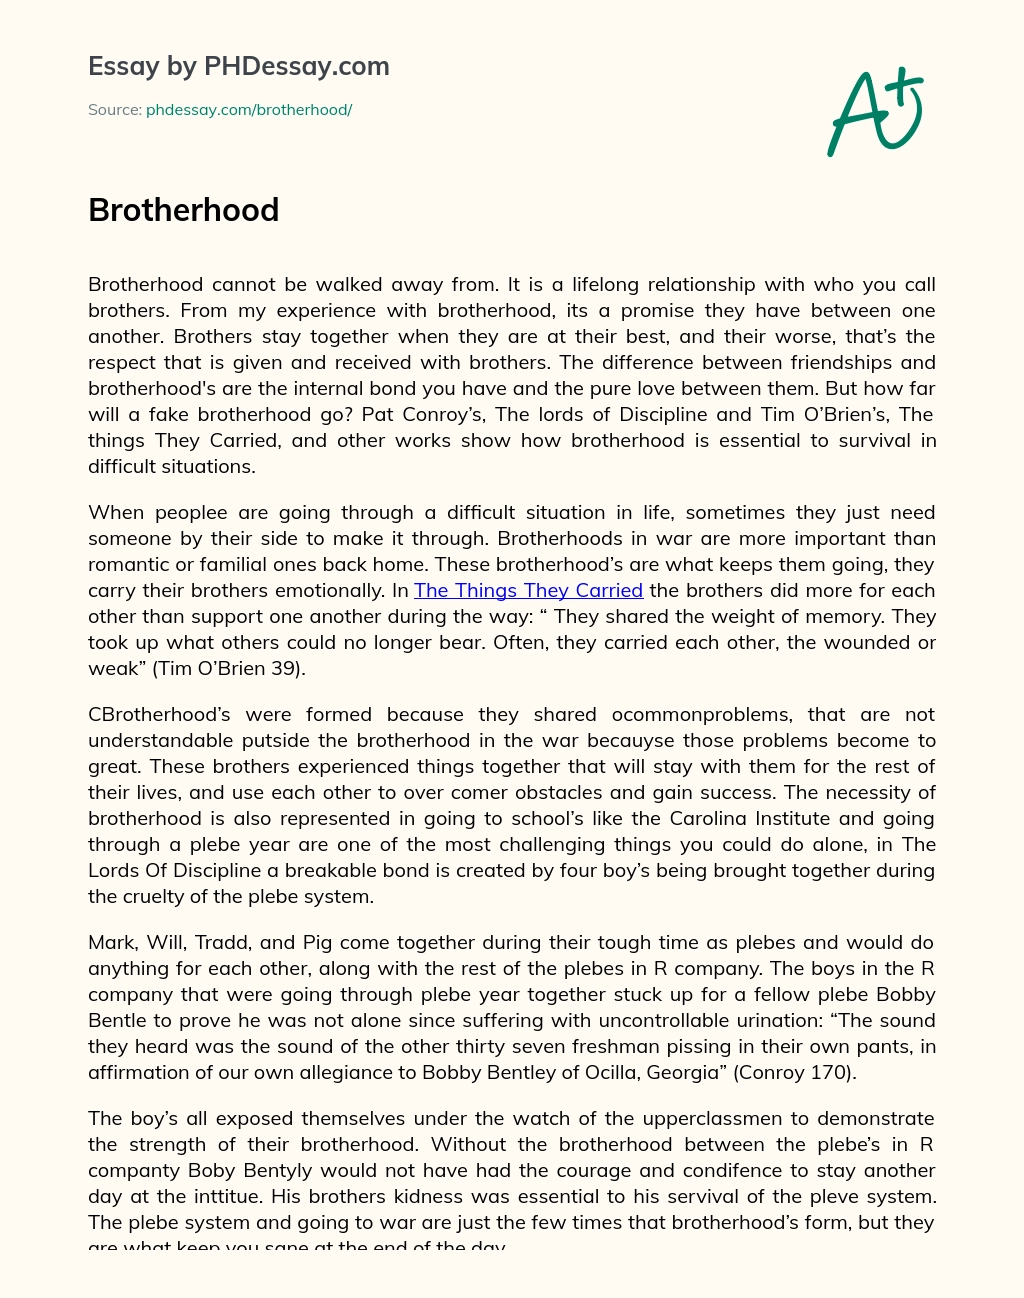 Brotherhood essay